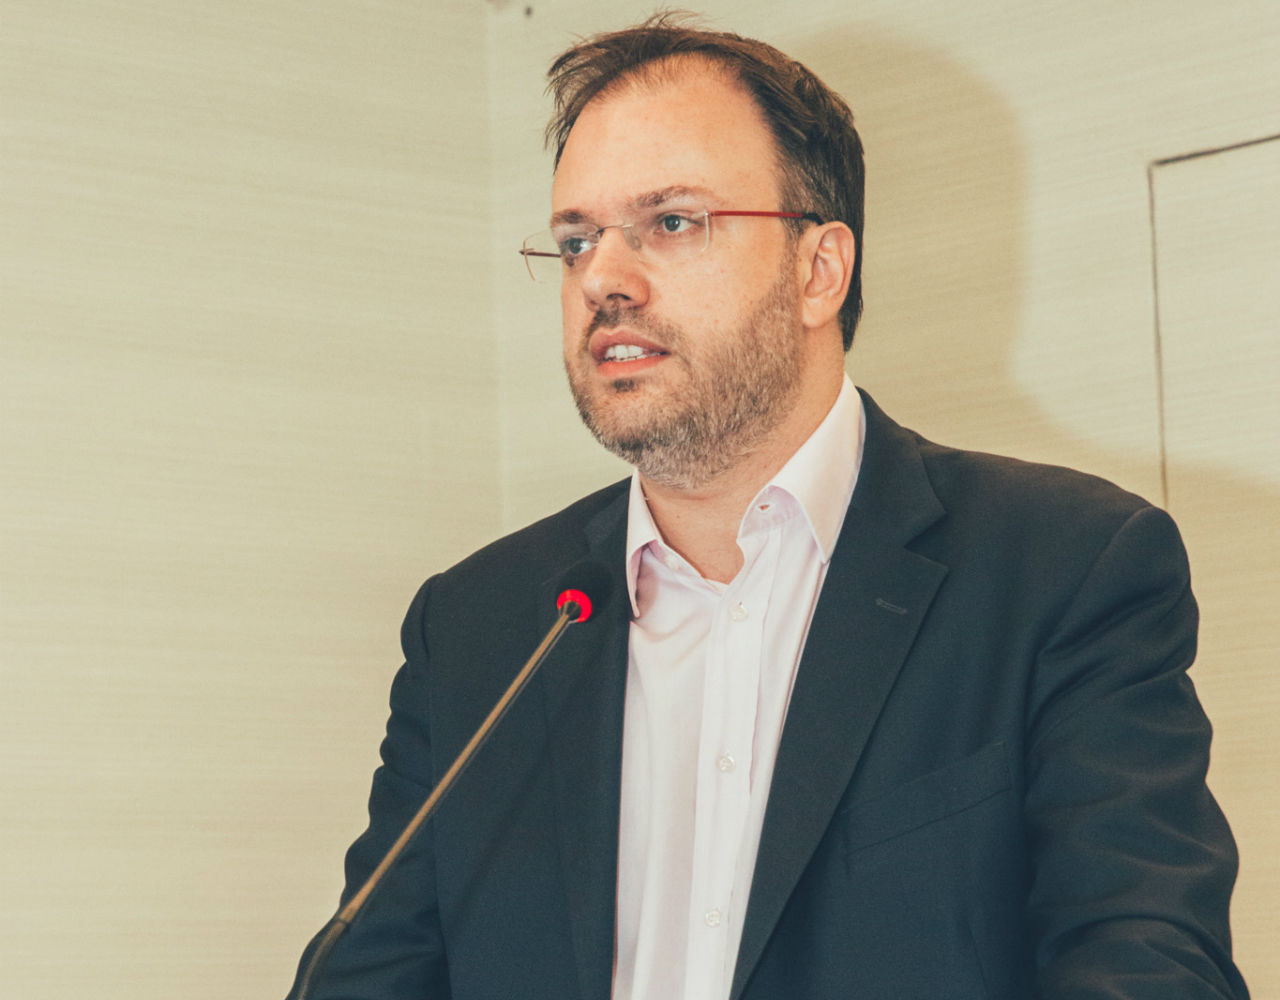 Θανάσης Θεοχαρόπουλος: “Προτεραιότητα μας η ανάπτυξη στο Νότιο παραλιακό μέτωπο”